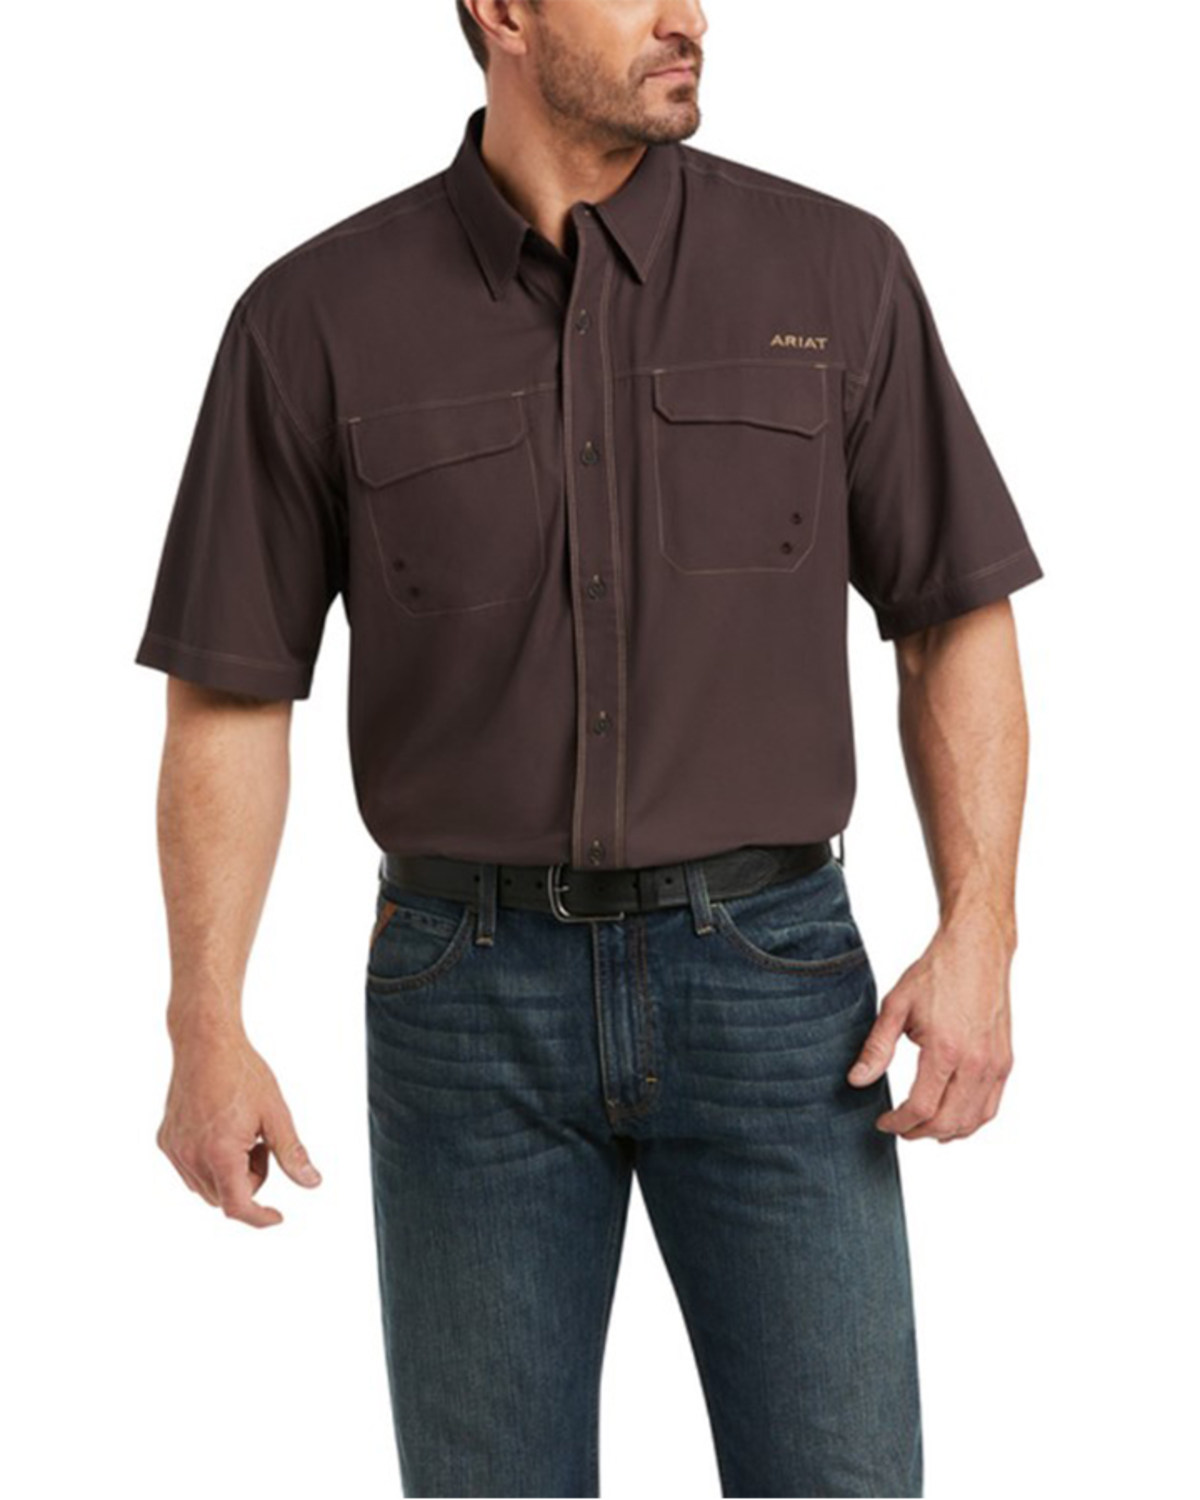 Ariat Men's VentTEK Outbound Short Sleeve Button-Down Shirt